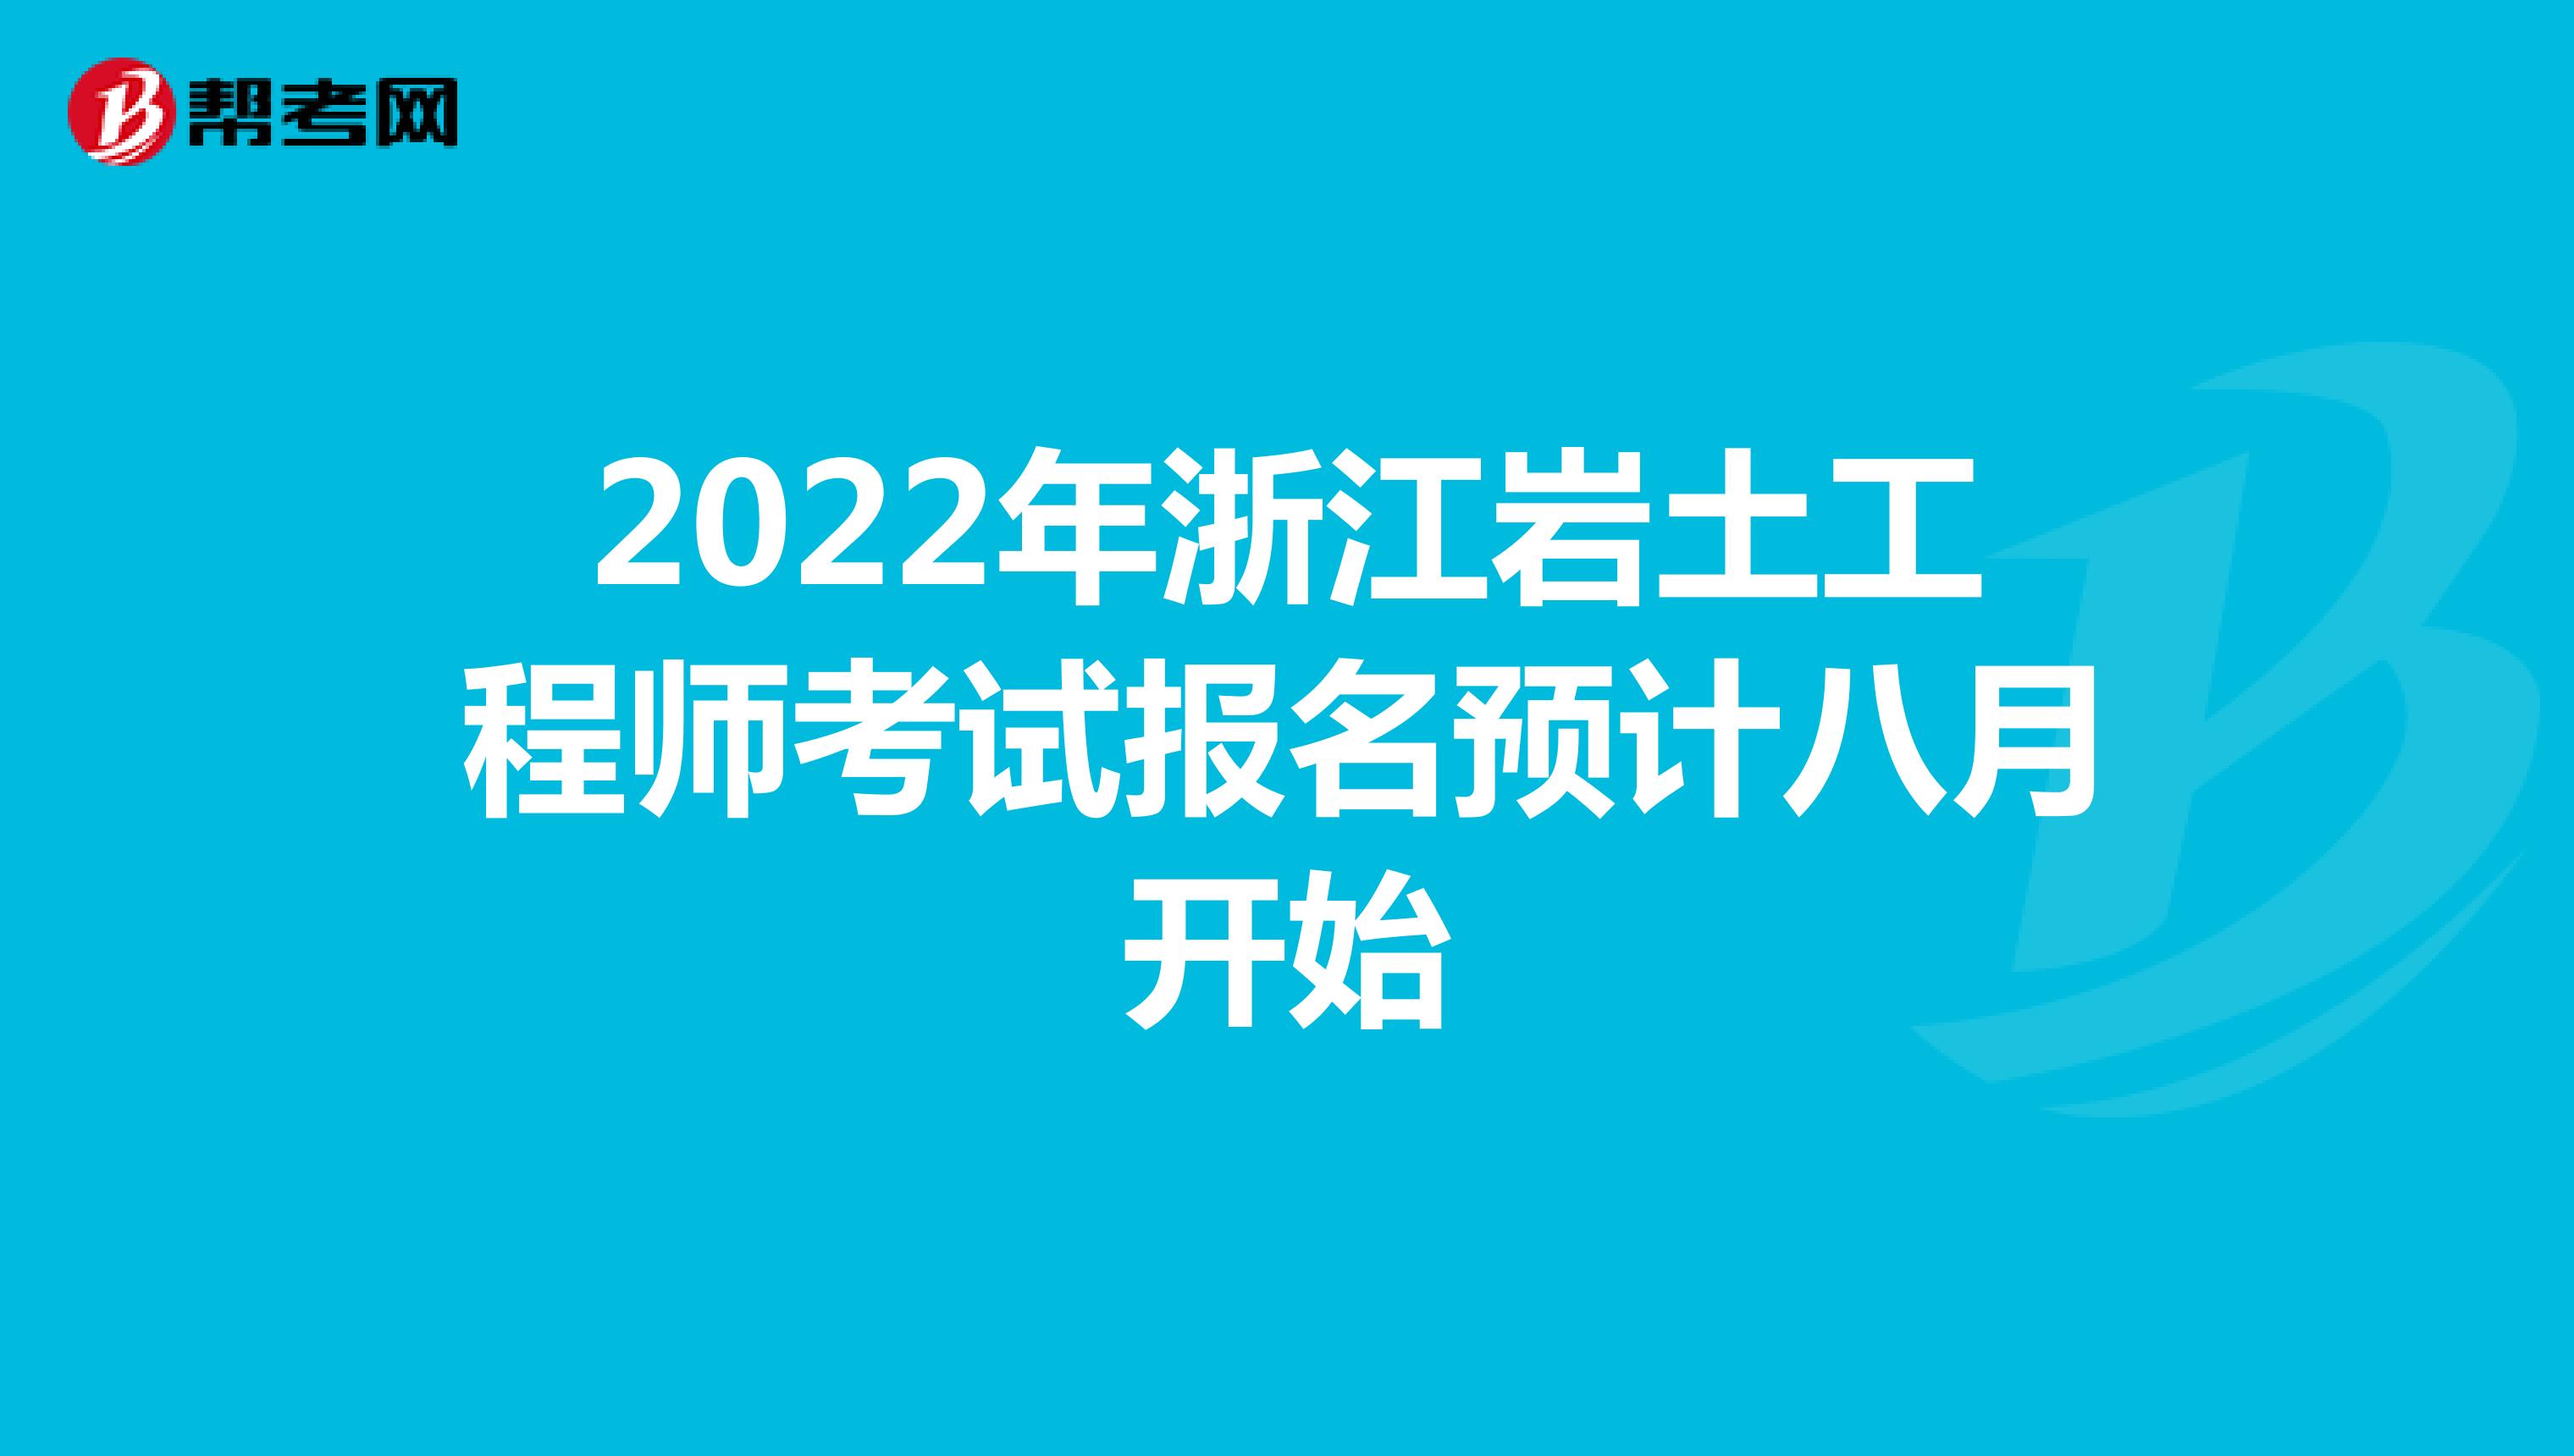 2022年浙江岩土工程师考试报名预计八月开始